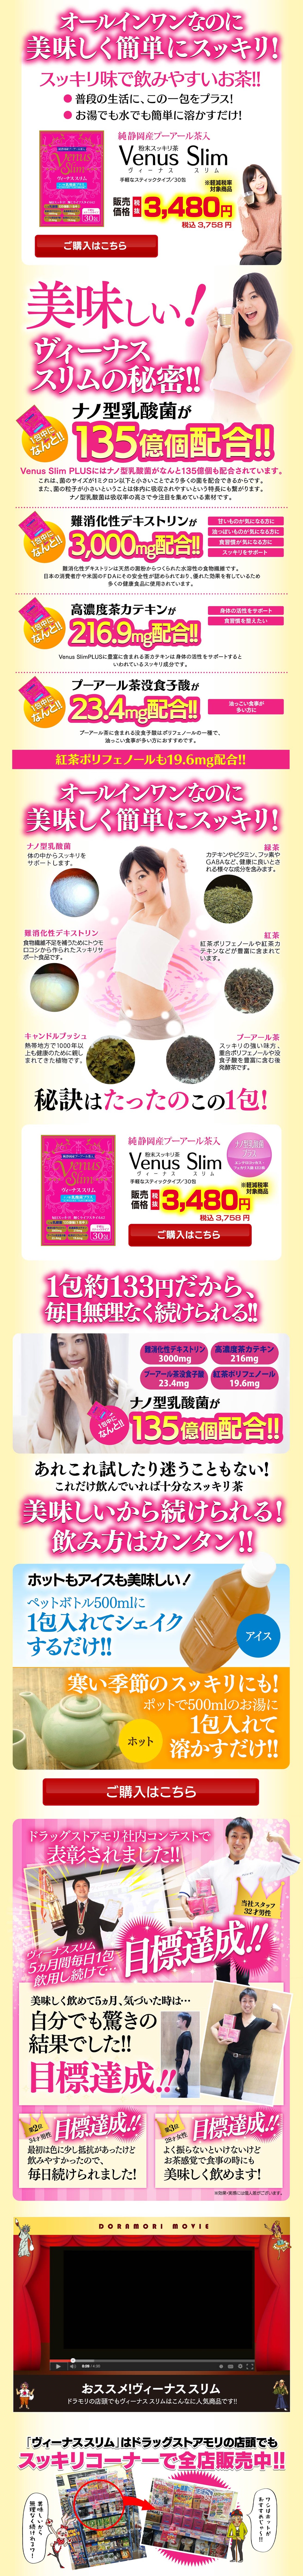 Venus Slim